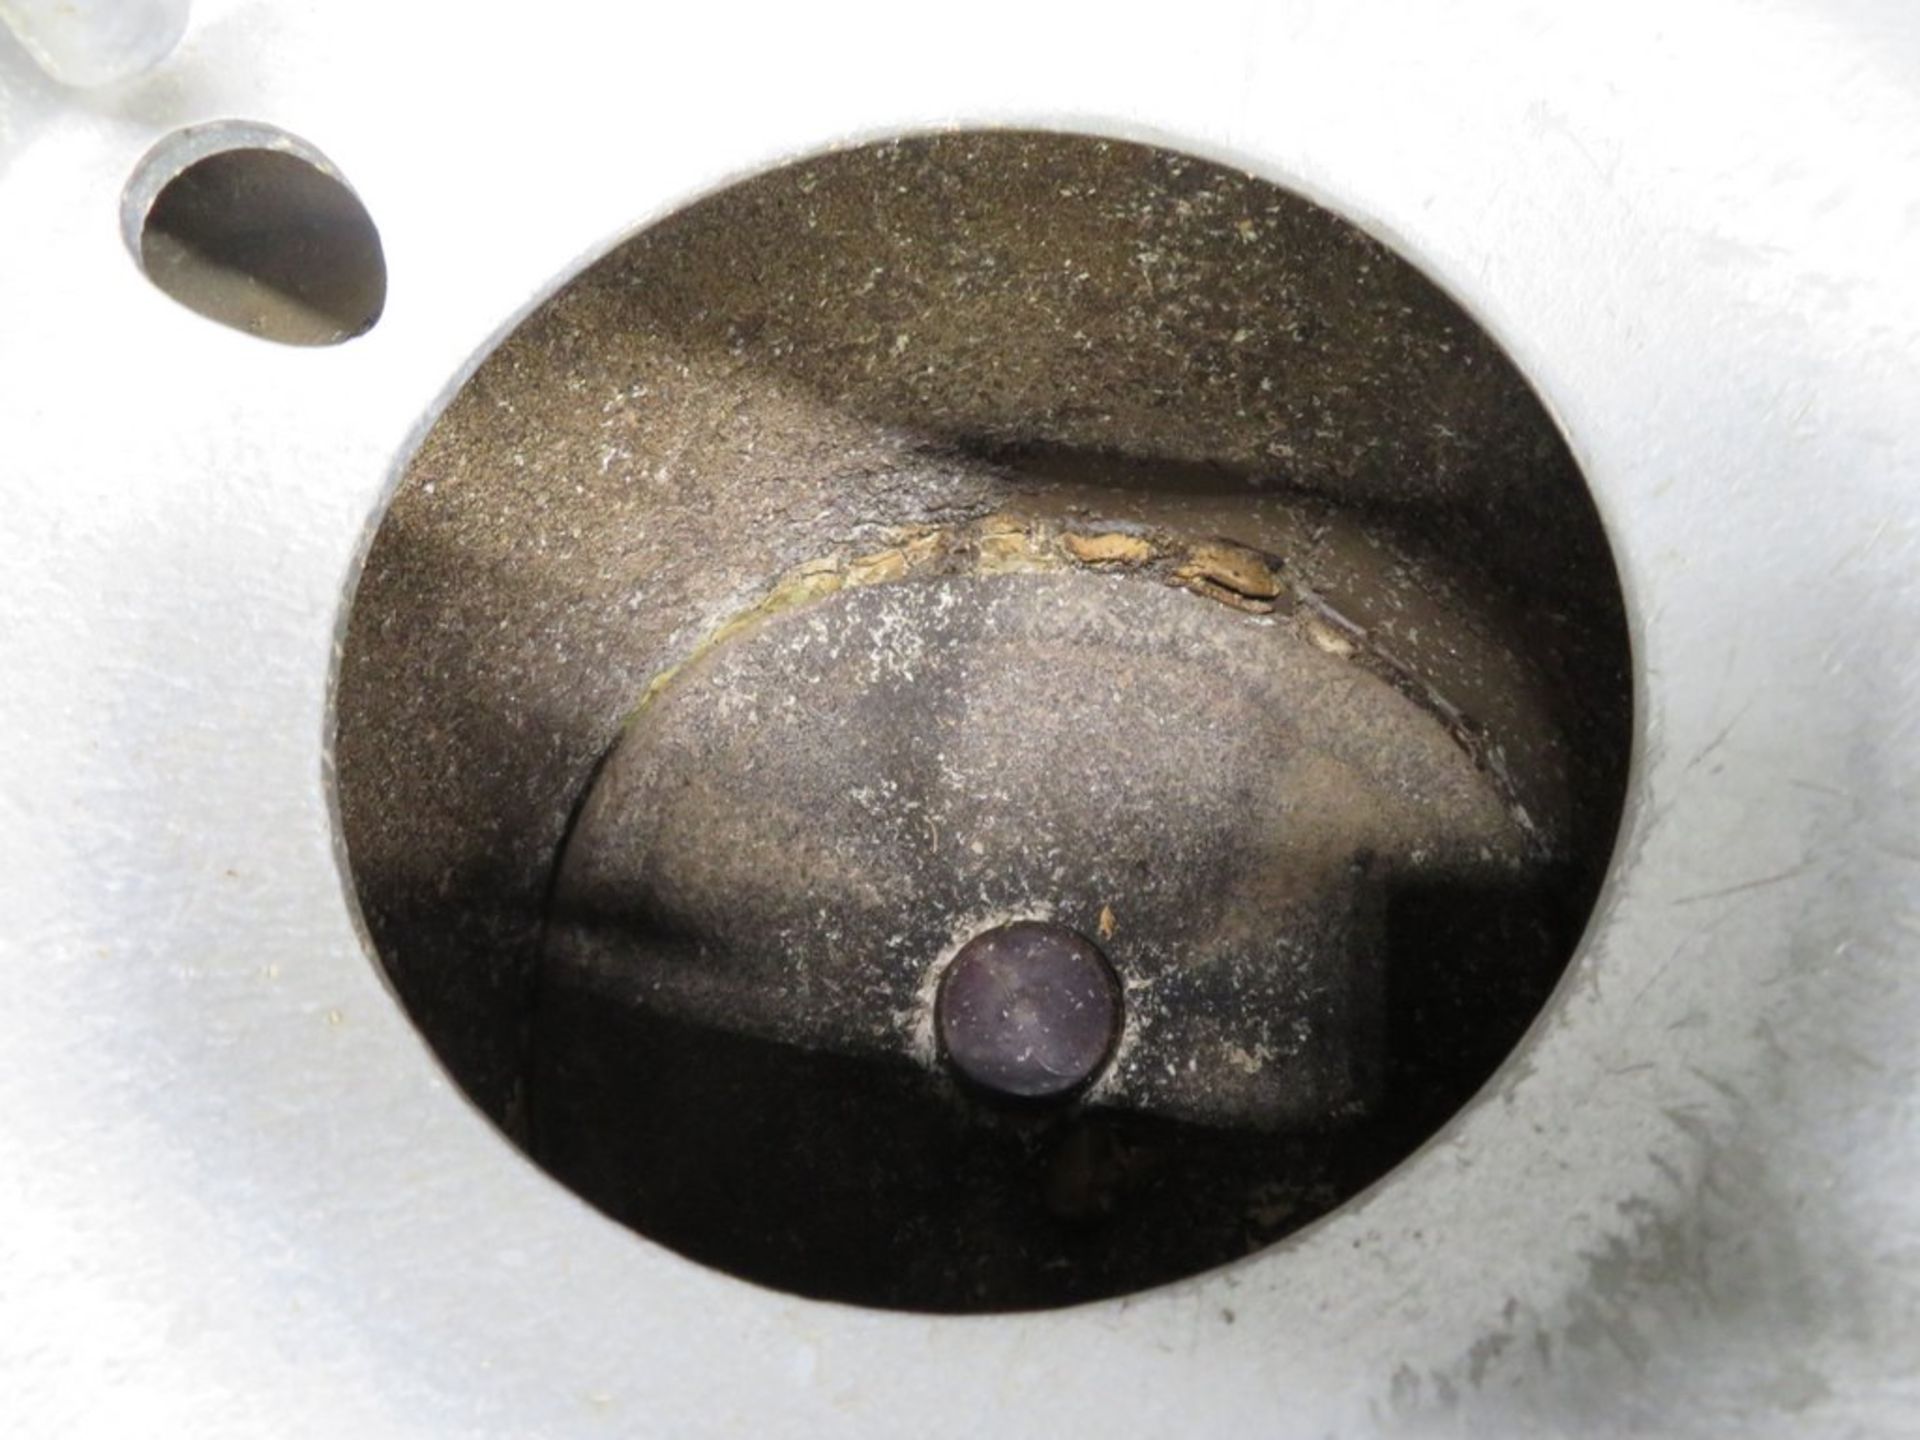 Hobart E6128 28lb/13kg potato peeler, 1 phase electric - Image 6 of 8